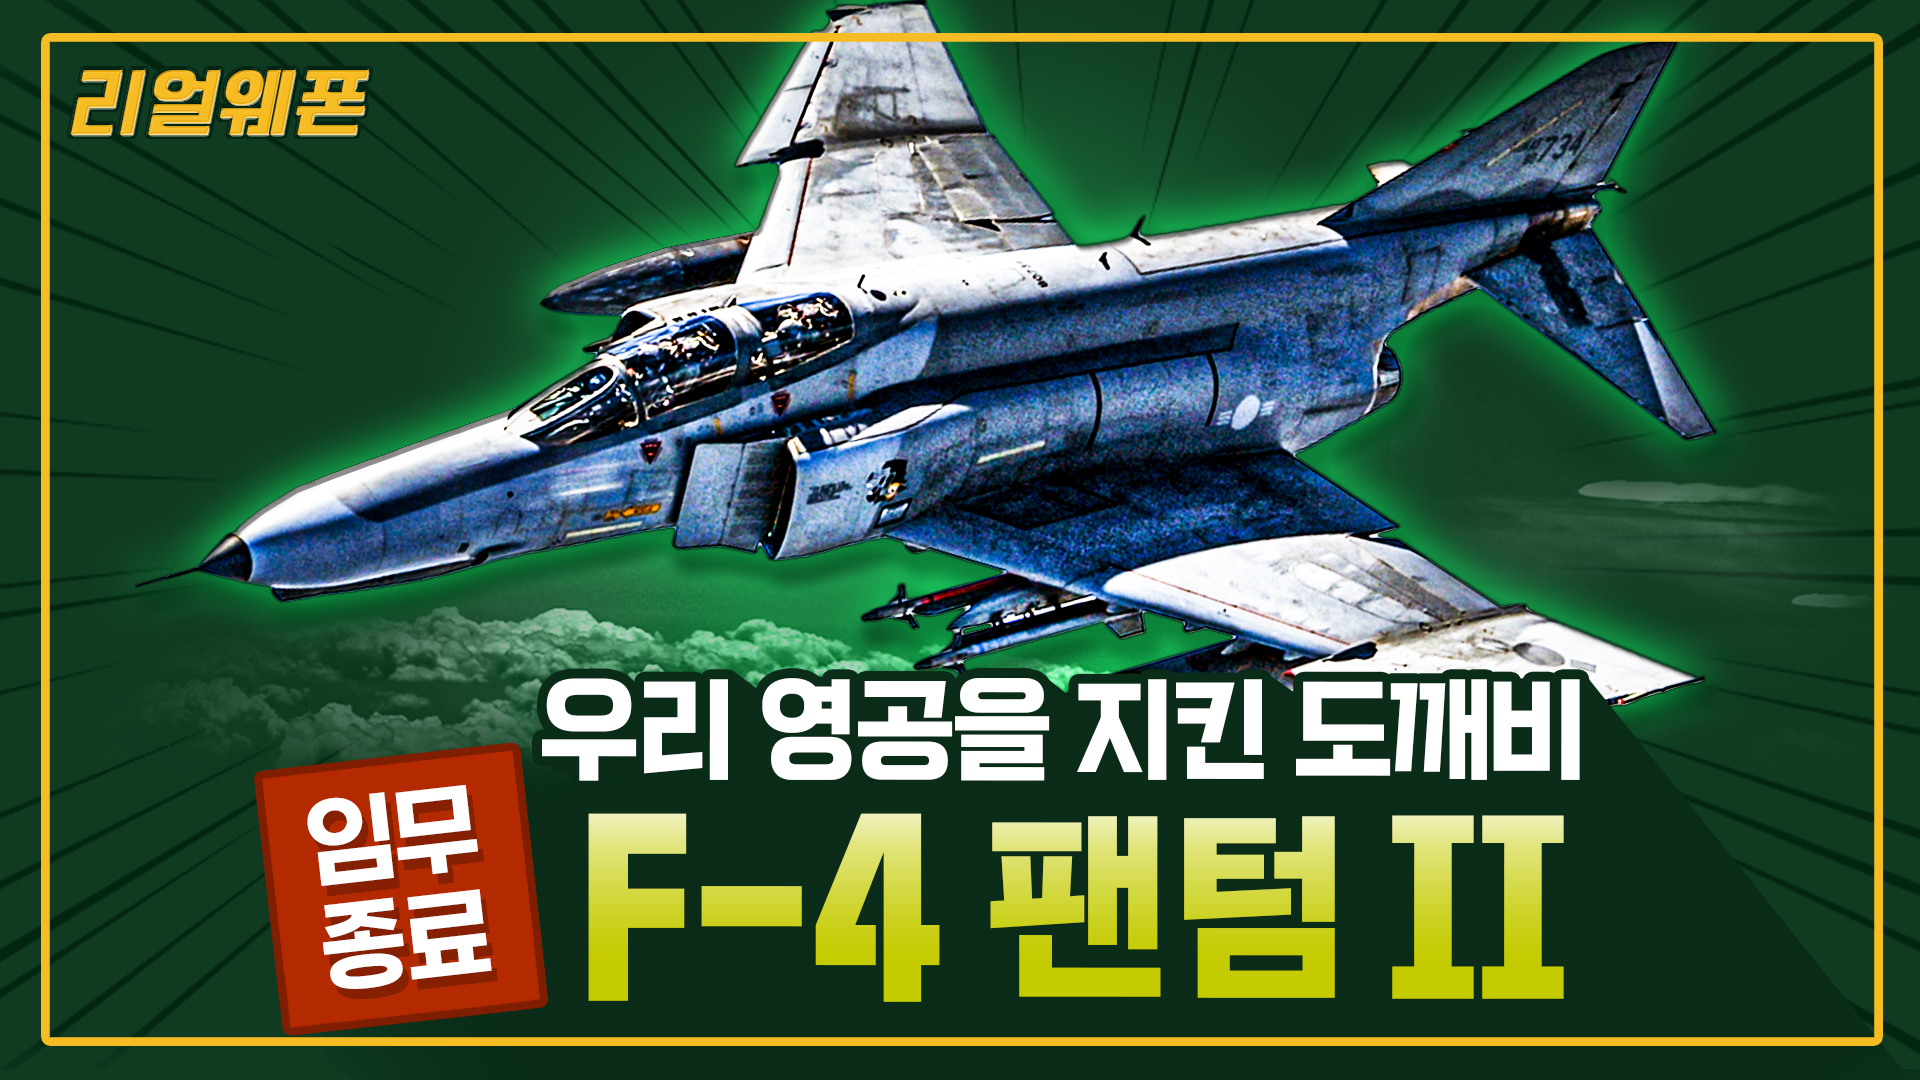 불멸의 도깨비! ‘F-4 팬텀 II’ ◆하늘을 호령하던 팬텀 퇴역의 길로~ ☆리얼웨폰234